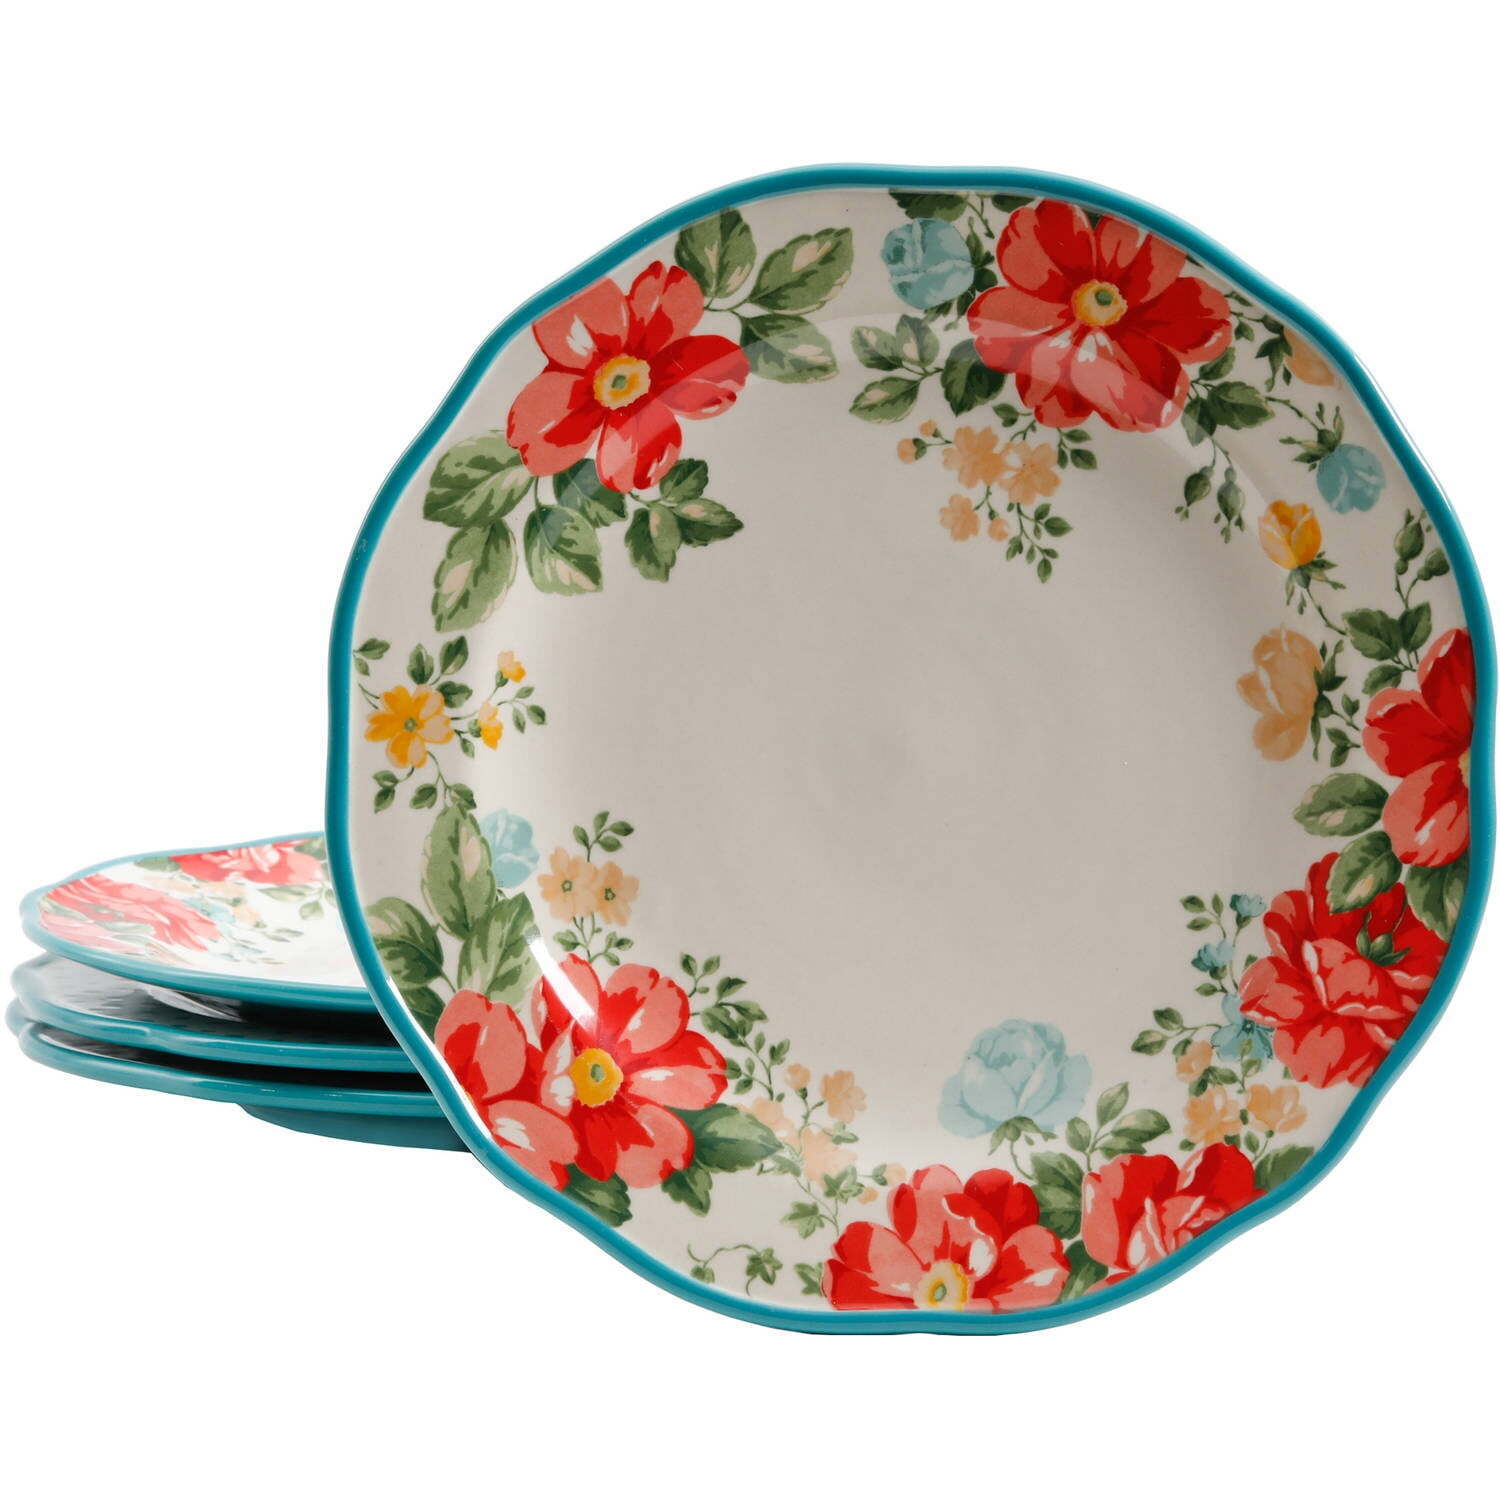 Vintage Floral 4-Piece Dinner Plate Set